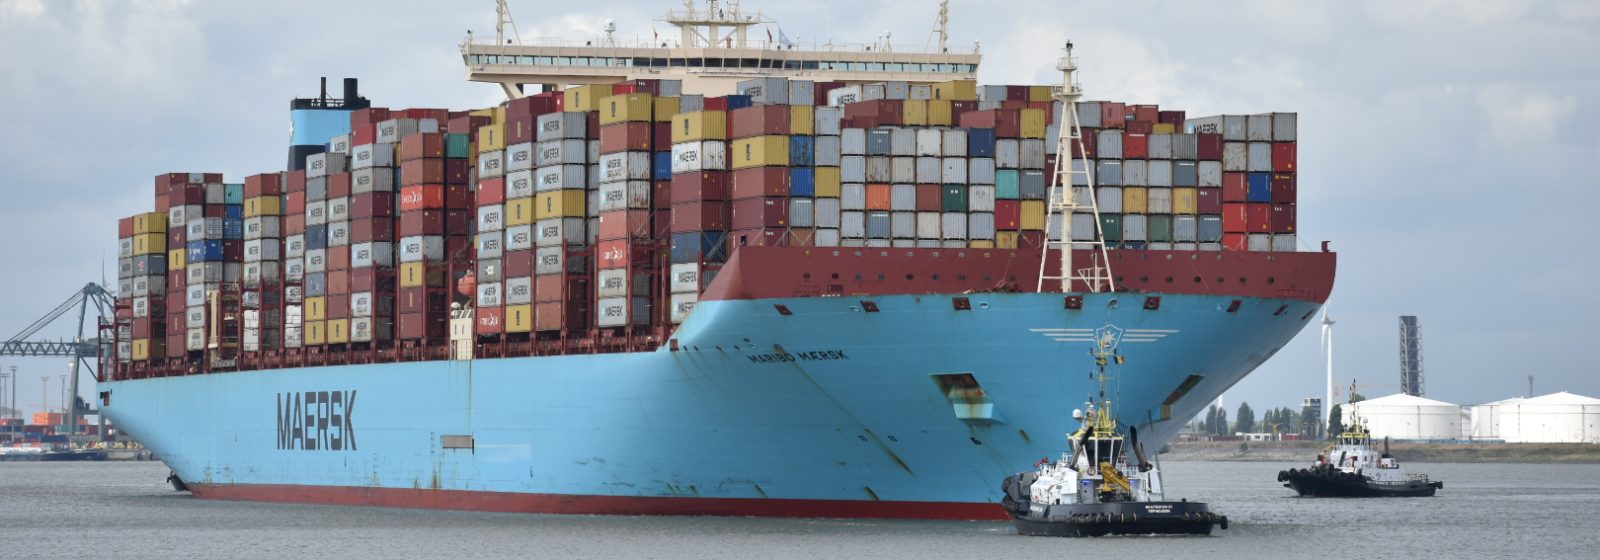 De 'Maribo Maersk' (18.340 teu) bij aankomst in Antwerpen ter hoogte van Doel